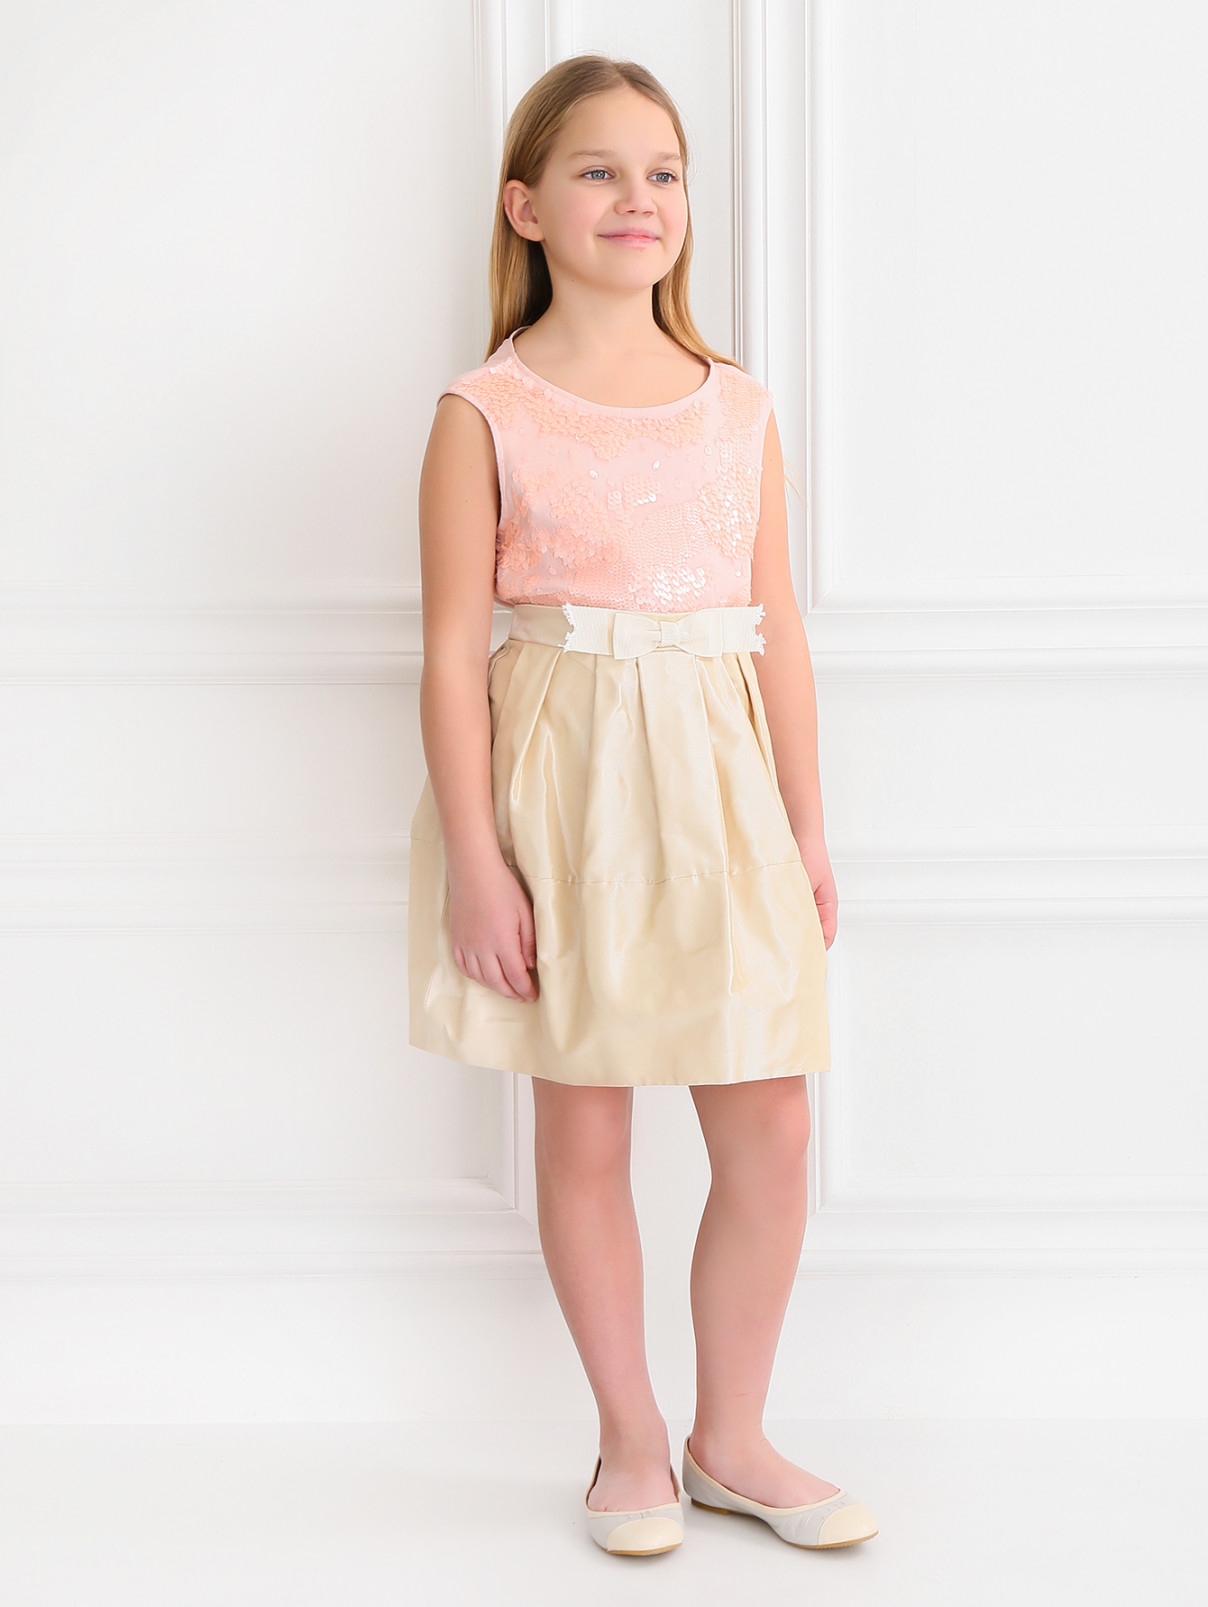 Пышная юбка с декоративным бантом MiMiSol  –  Модель Общий вид  – Цвет:  Белый